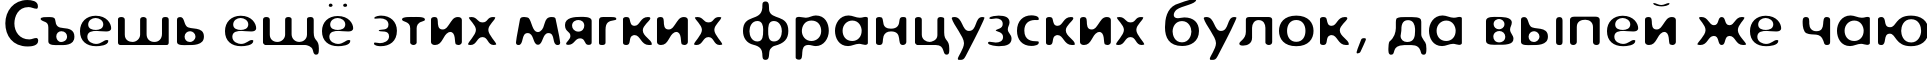 Пример написания шрифтом ExposureCOne текста на русском